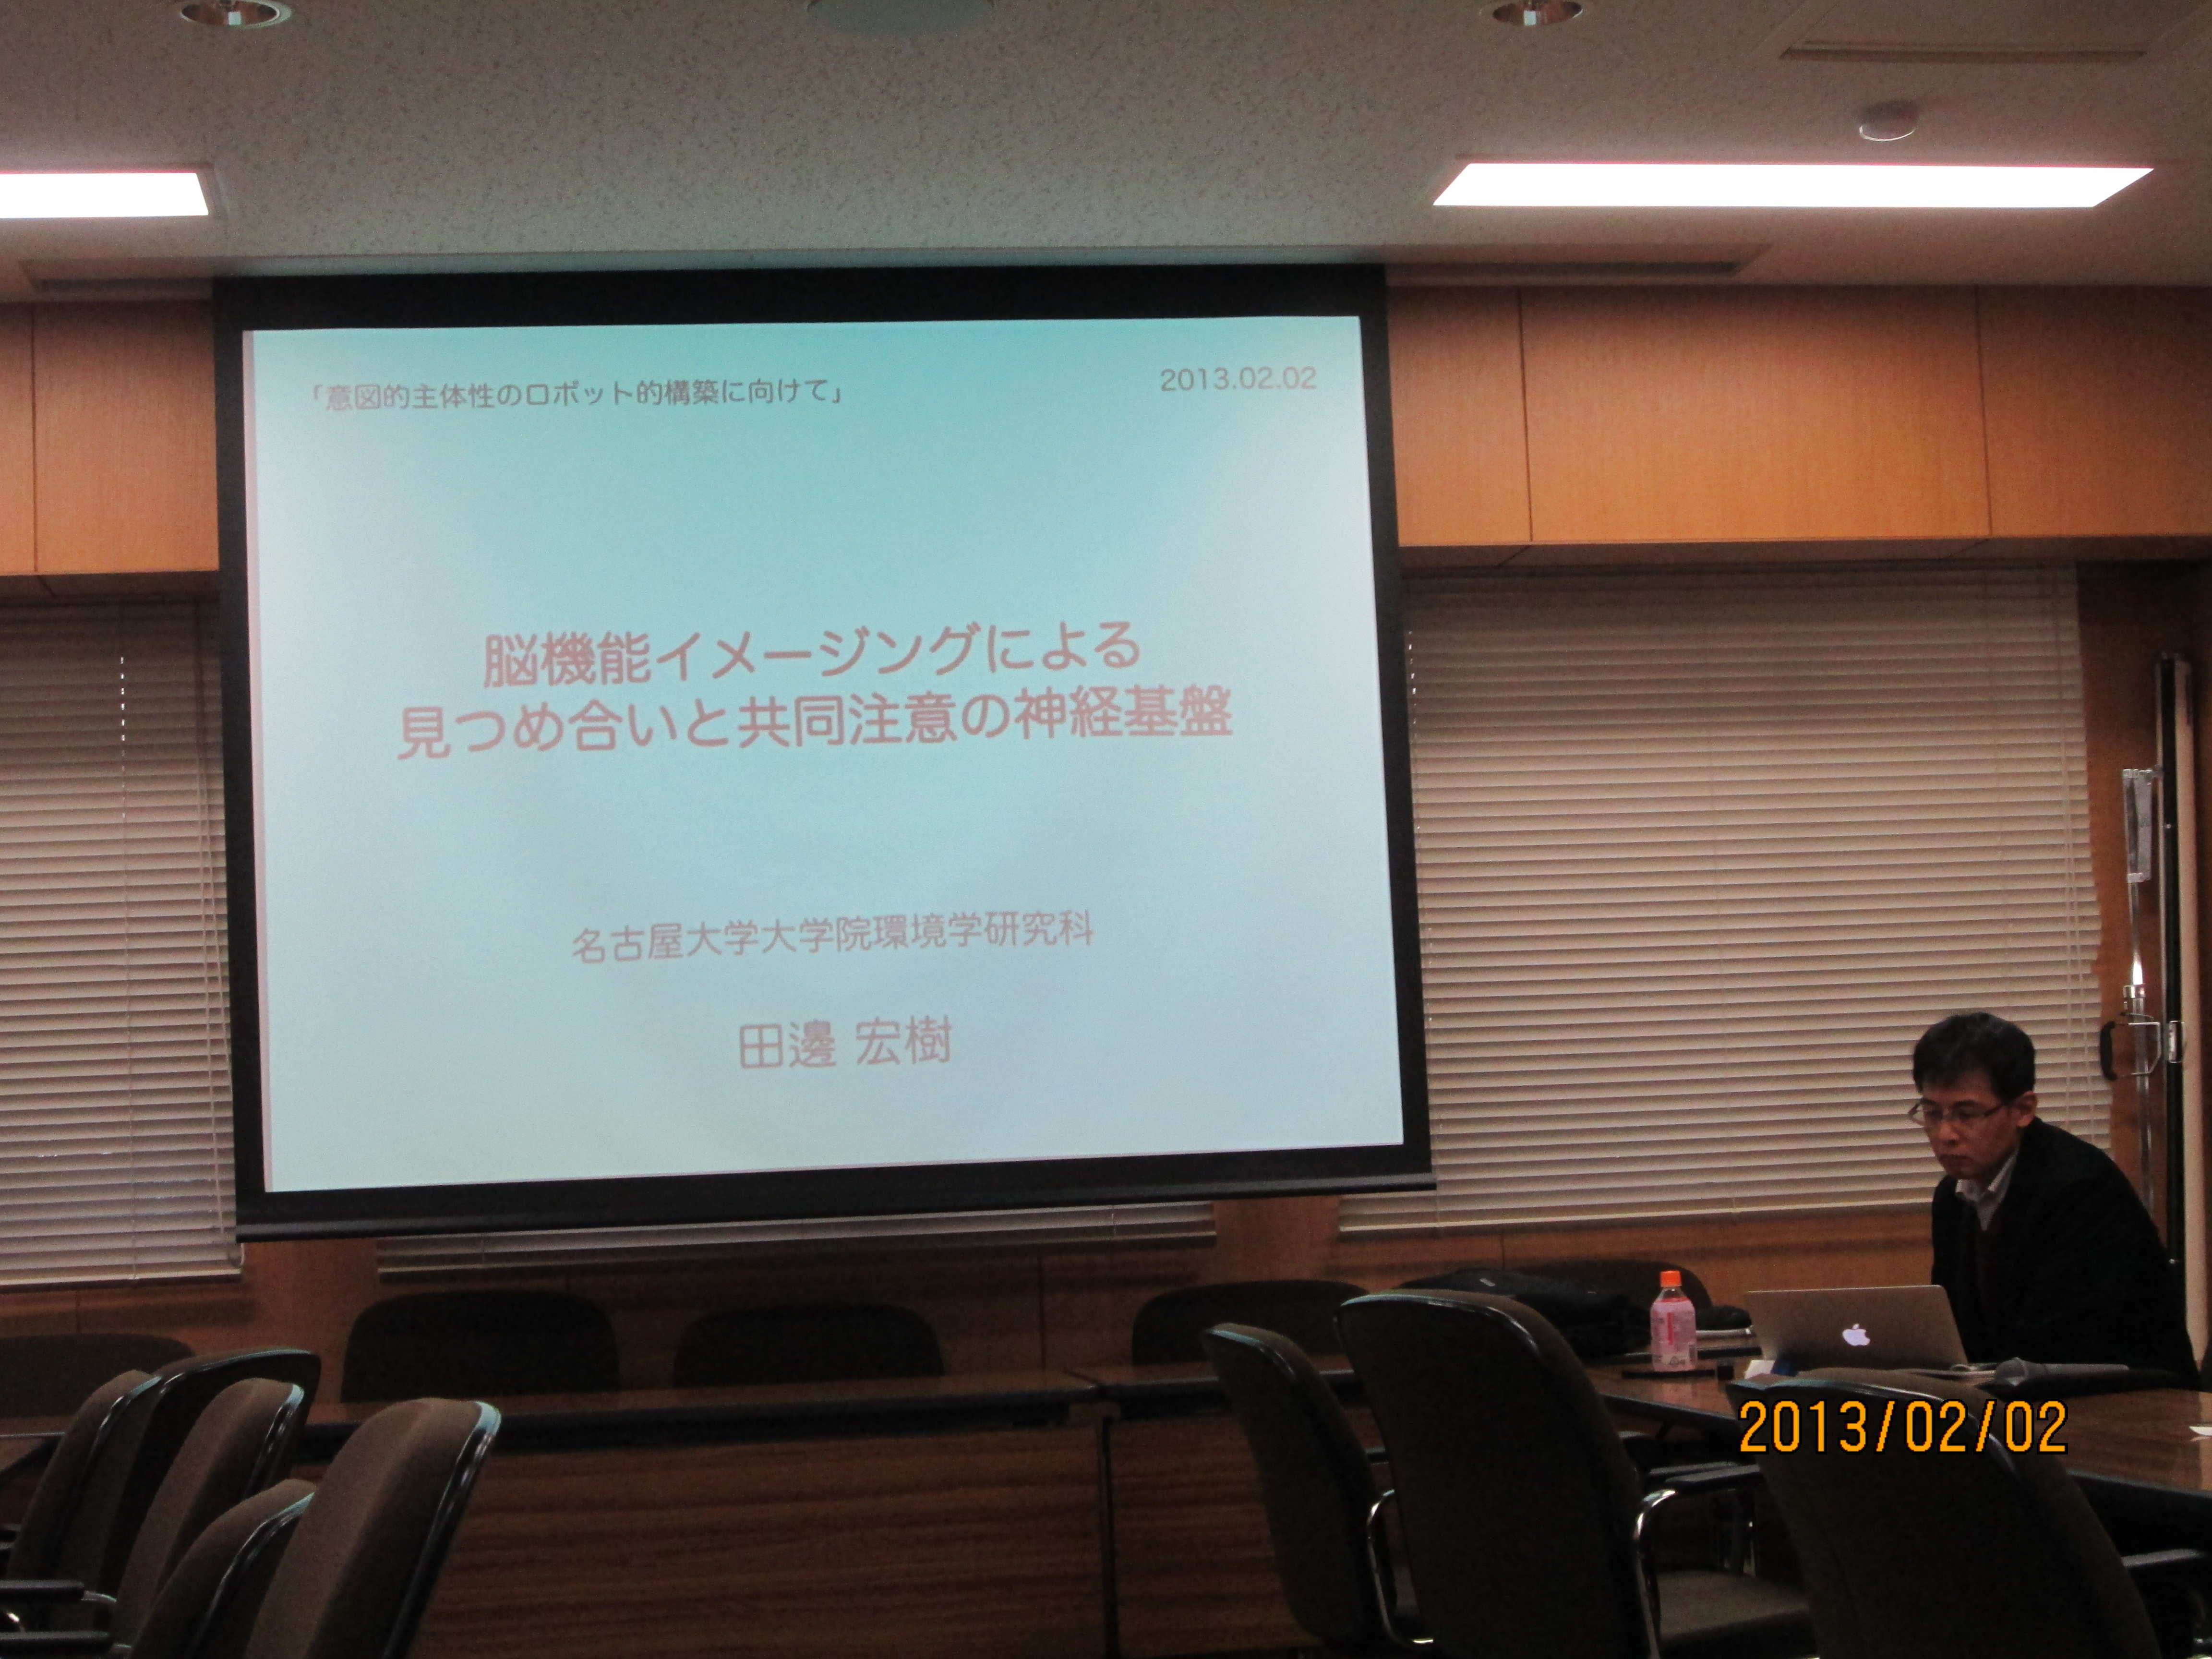 発表スライドを前にする田邊先生